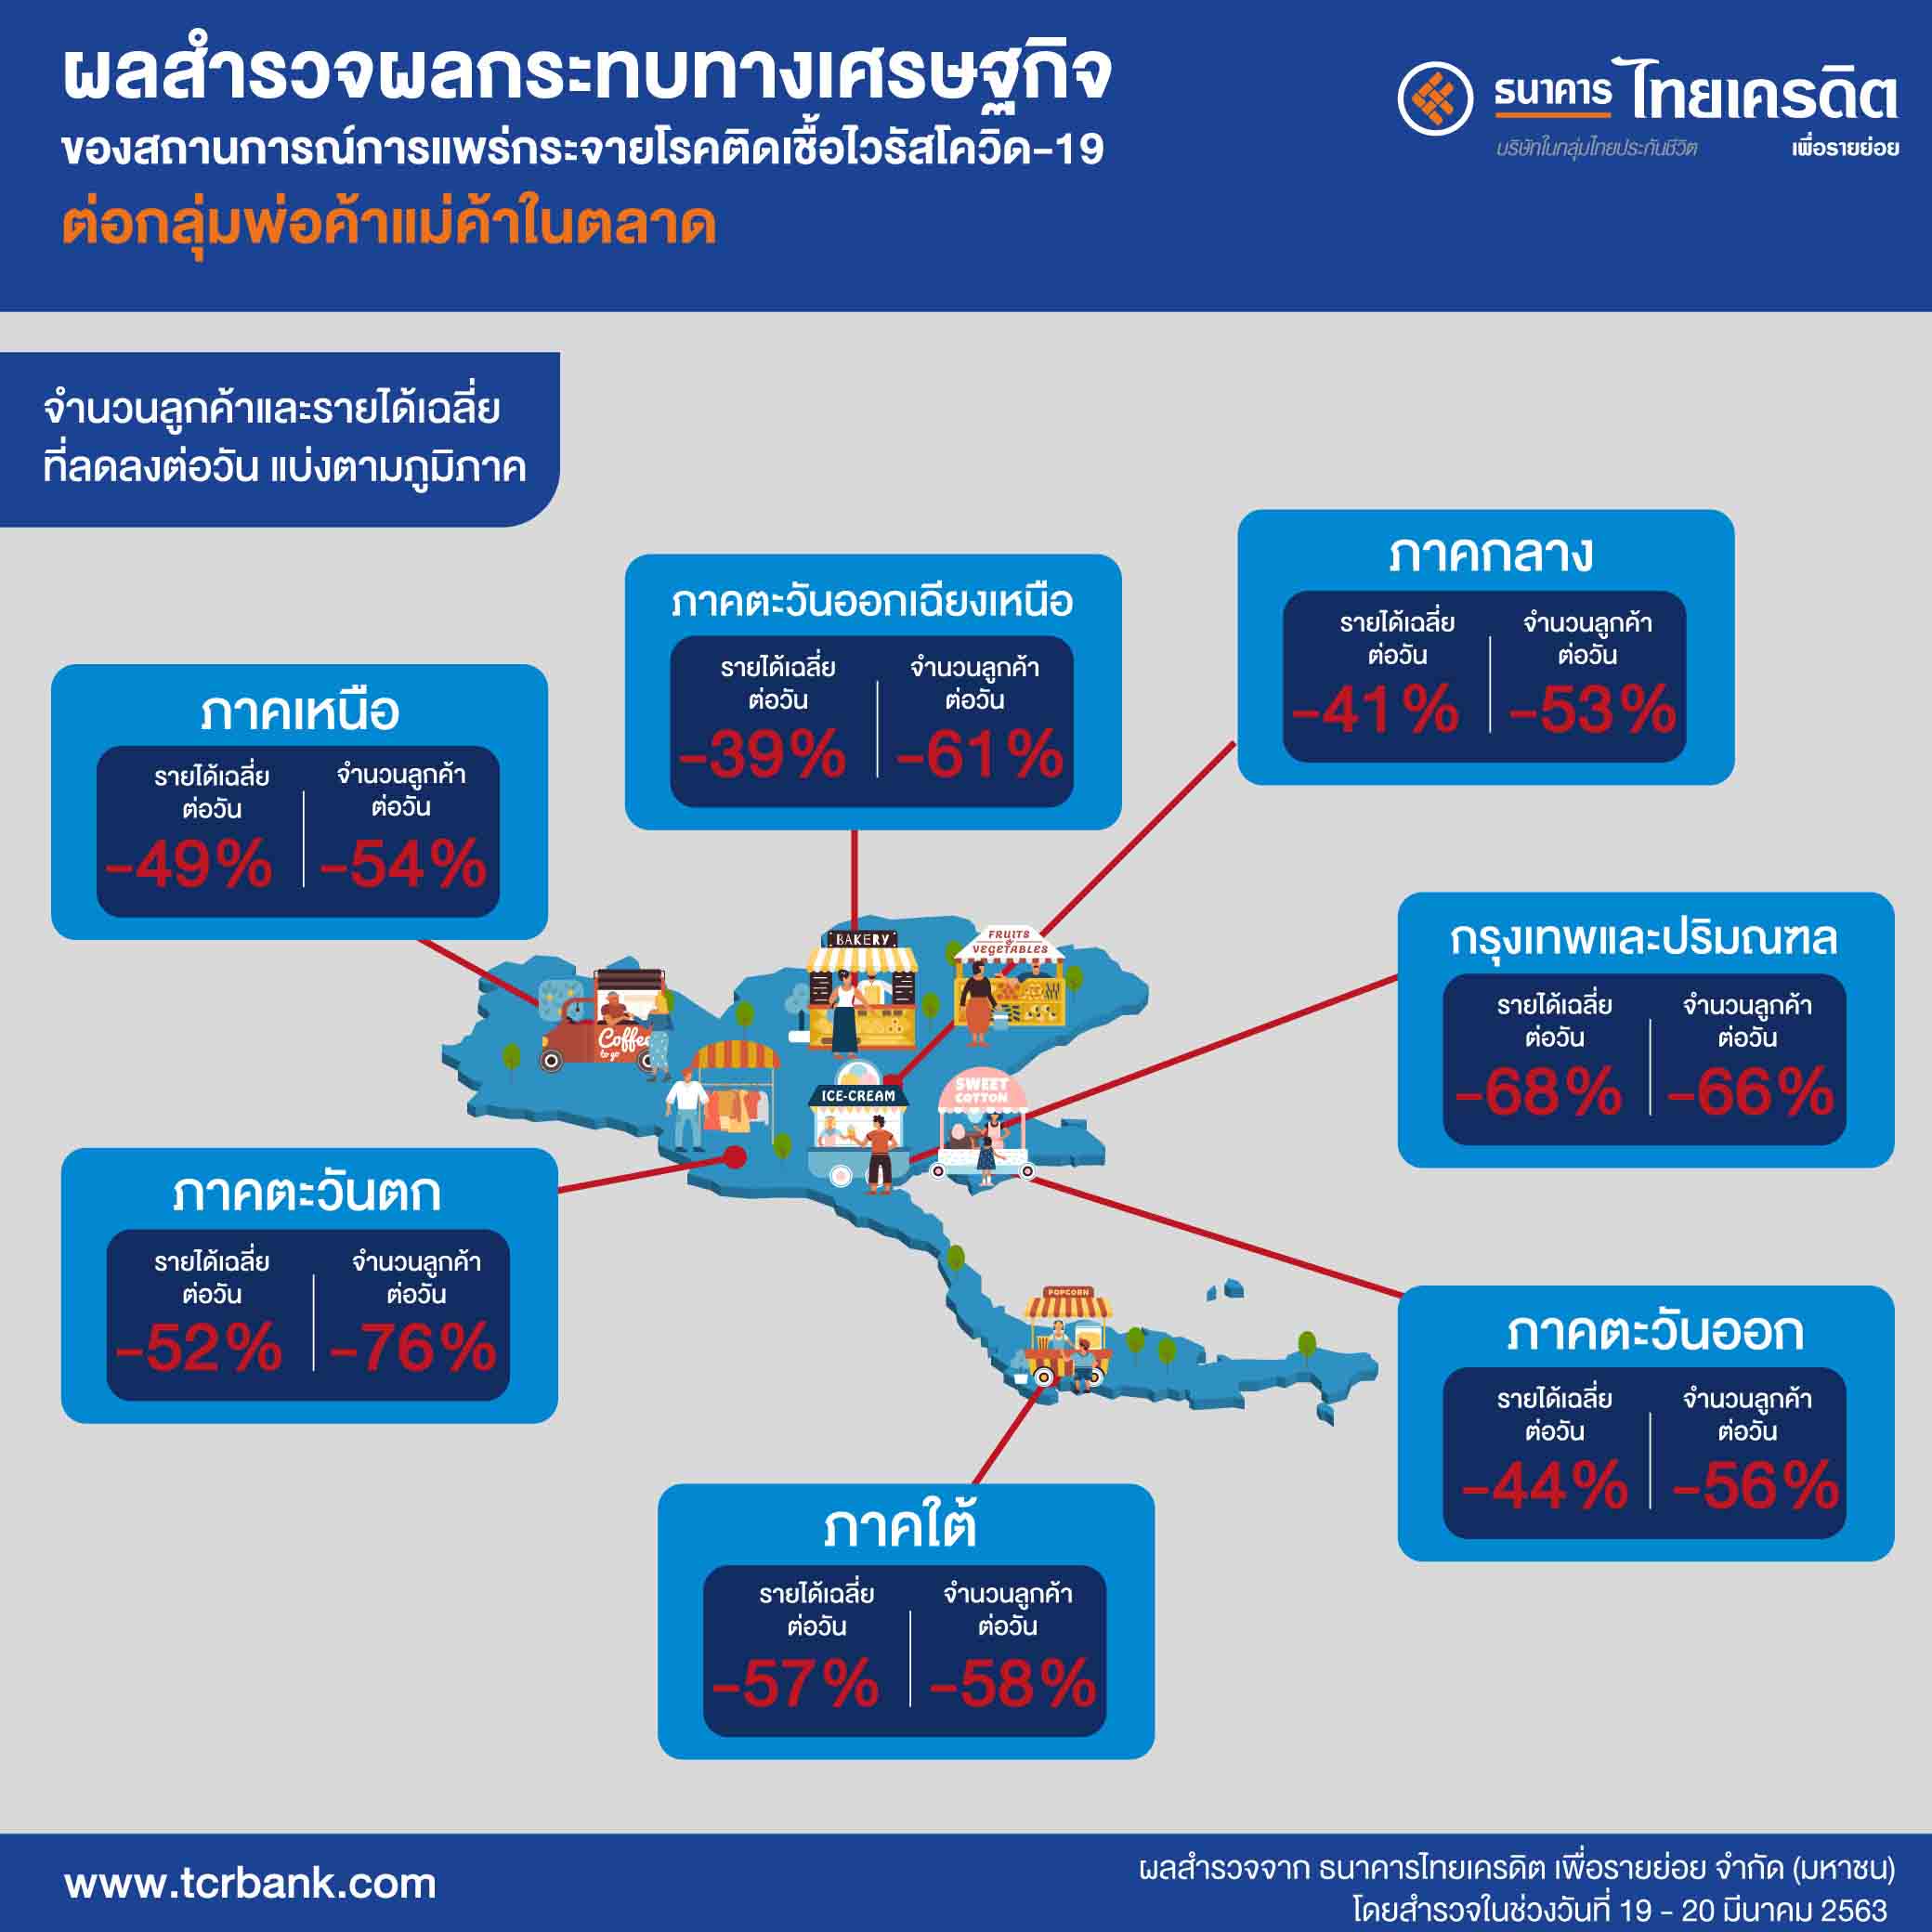 ธนาคารไทยเครดิตฯ ห่วงใยลูกค้า มอบกรมธรรม์ประกันภัยคุ้มครองชีวิตจากการติดเชื้อไวรัสโควิด-19ให้ลูกค้านาโนและไมโครเครดิตฟรีนาน 90 วัน ชดเชย 100,000